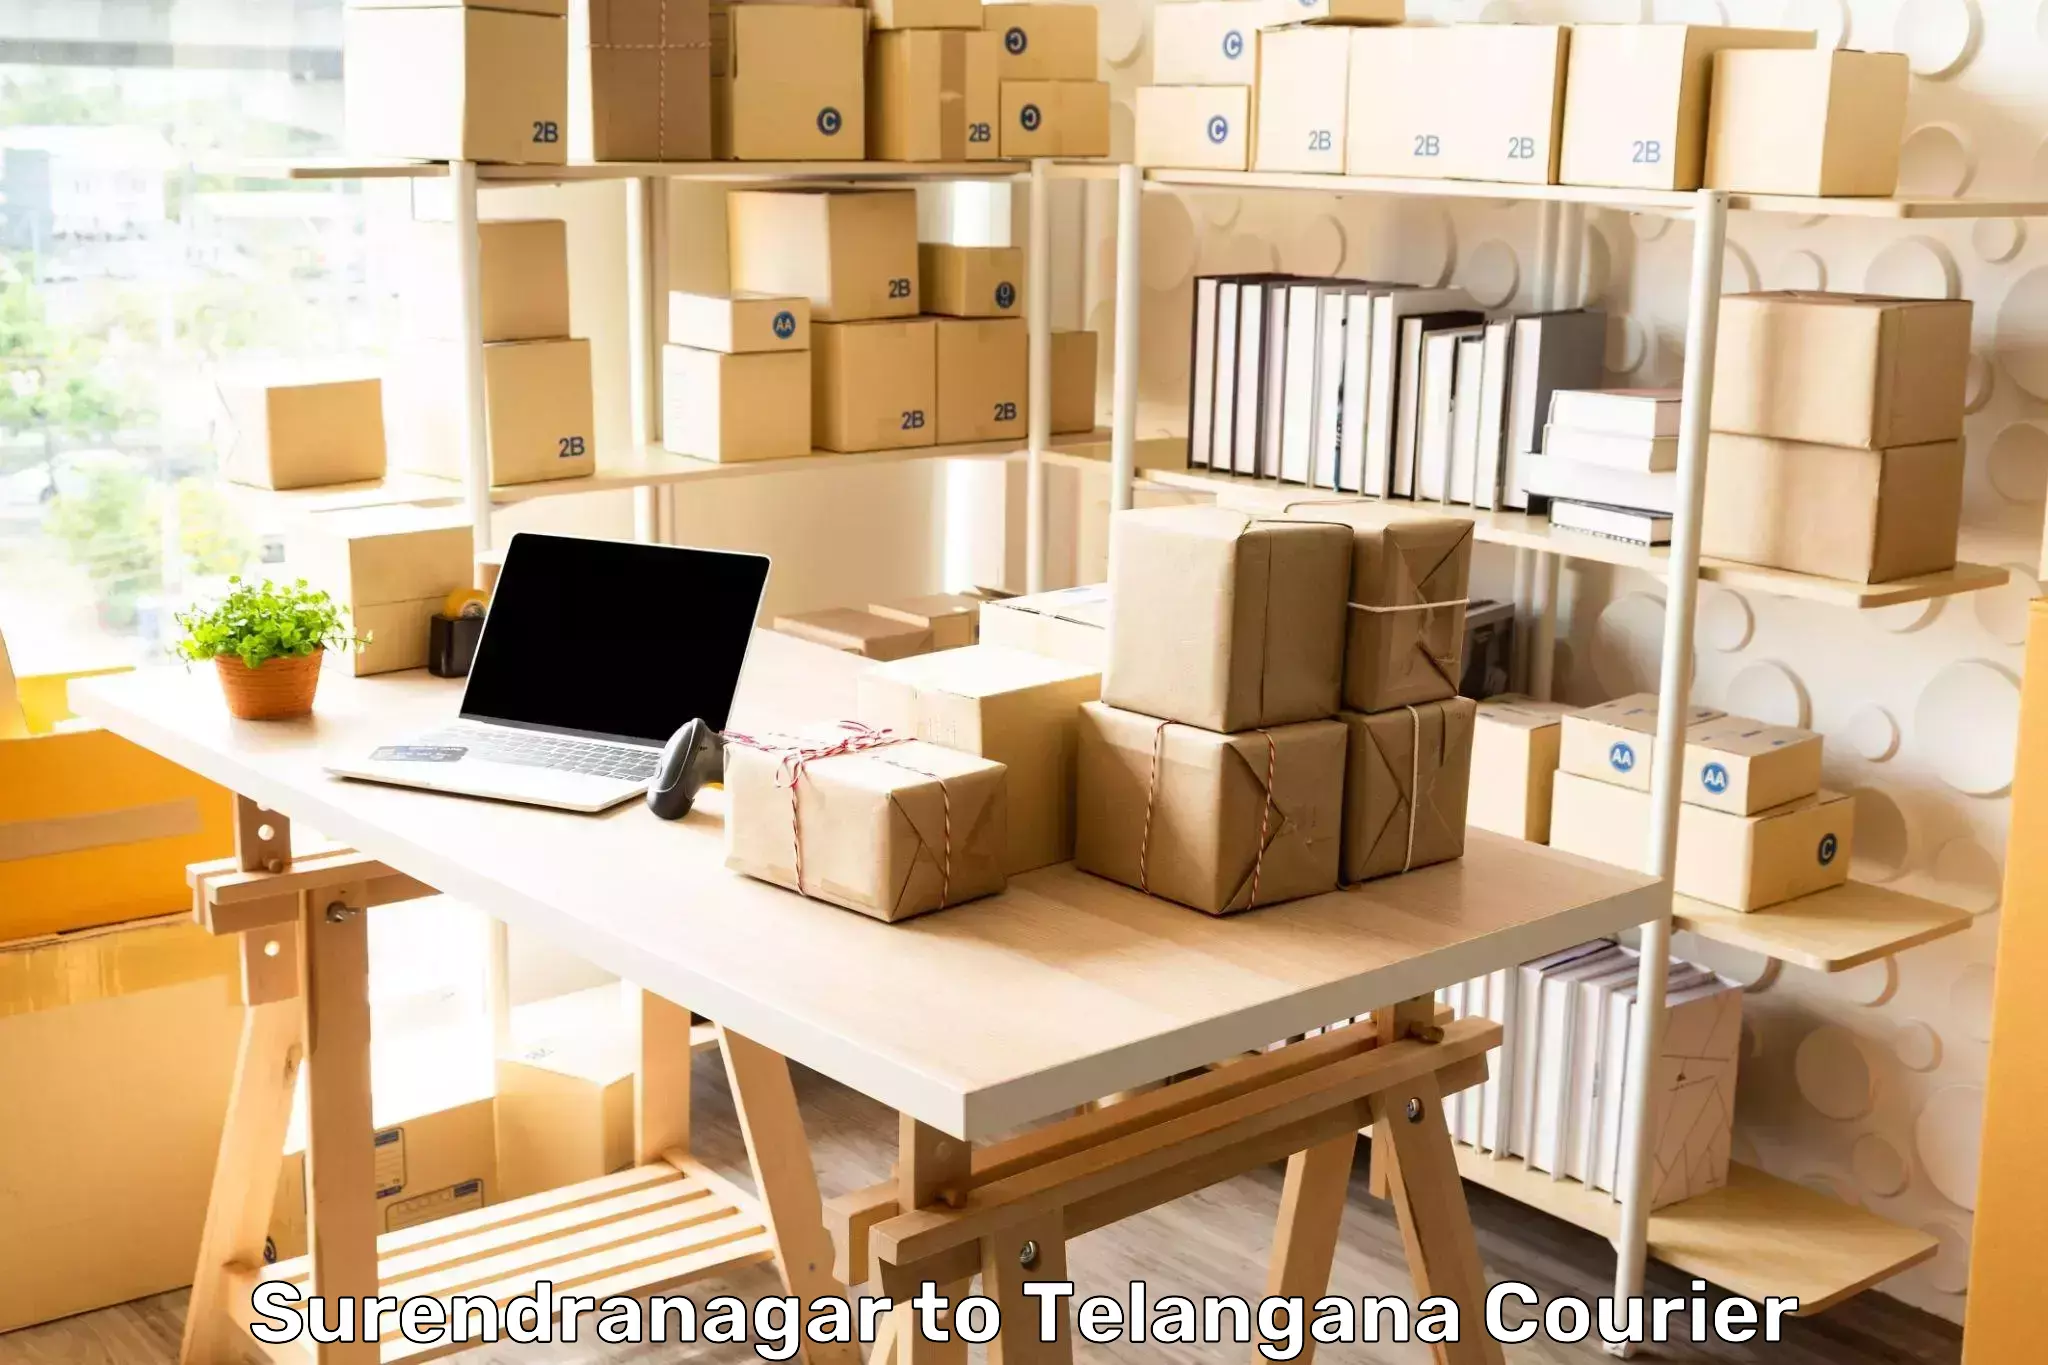 Reliable parcel services Surendranagar to Babasagar